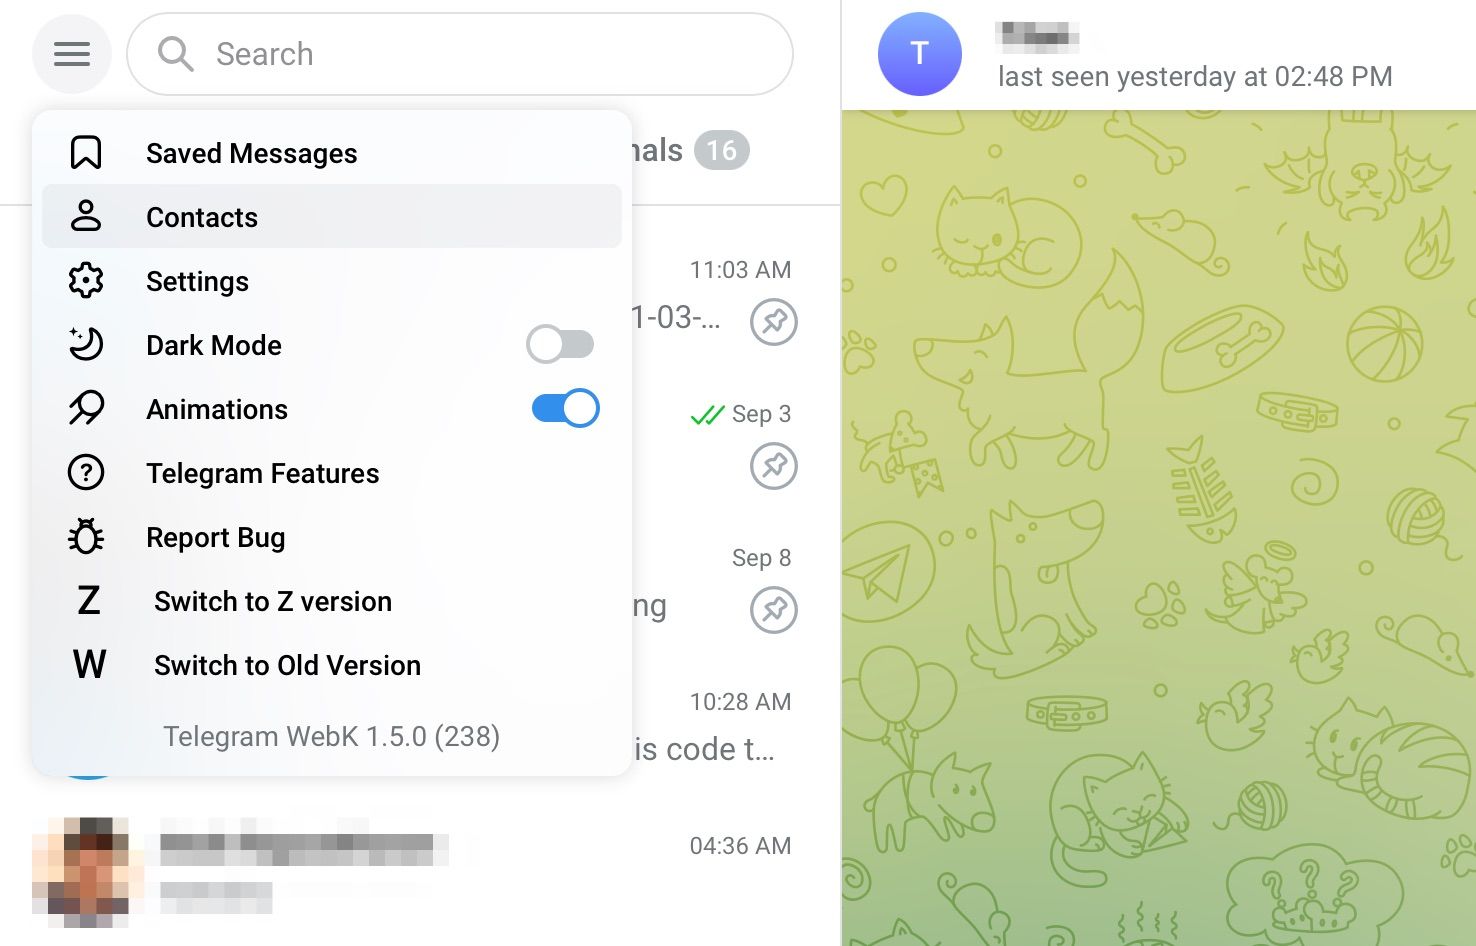 Select Contacts from Hamburger menu on Telegram web